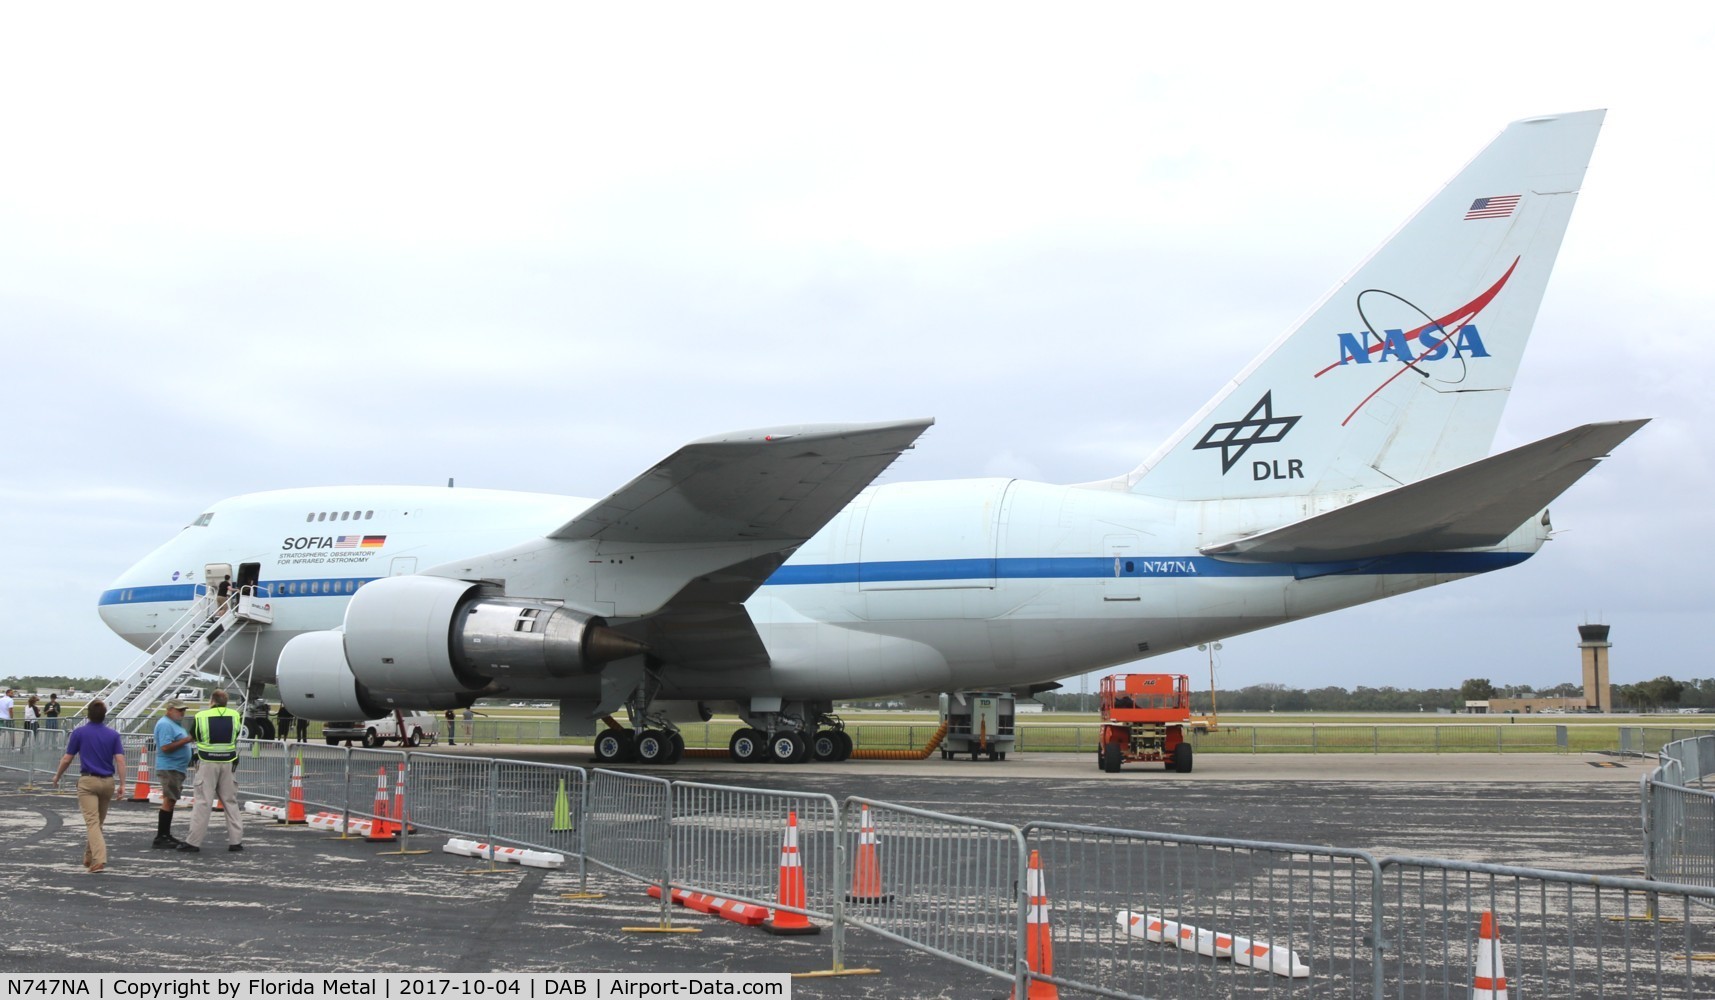 N747NA, 1977 Boeing 747SP-21 C/N 21441, NASA SOFIA 747SP